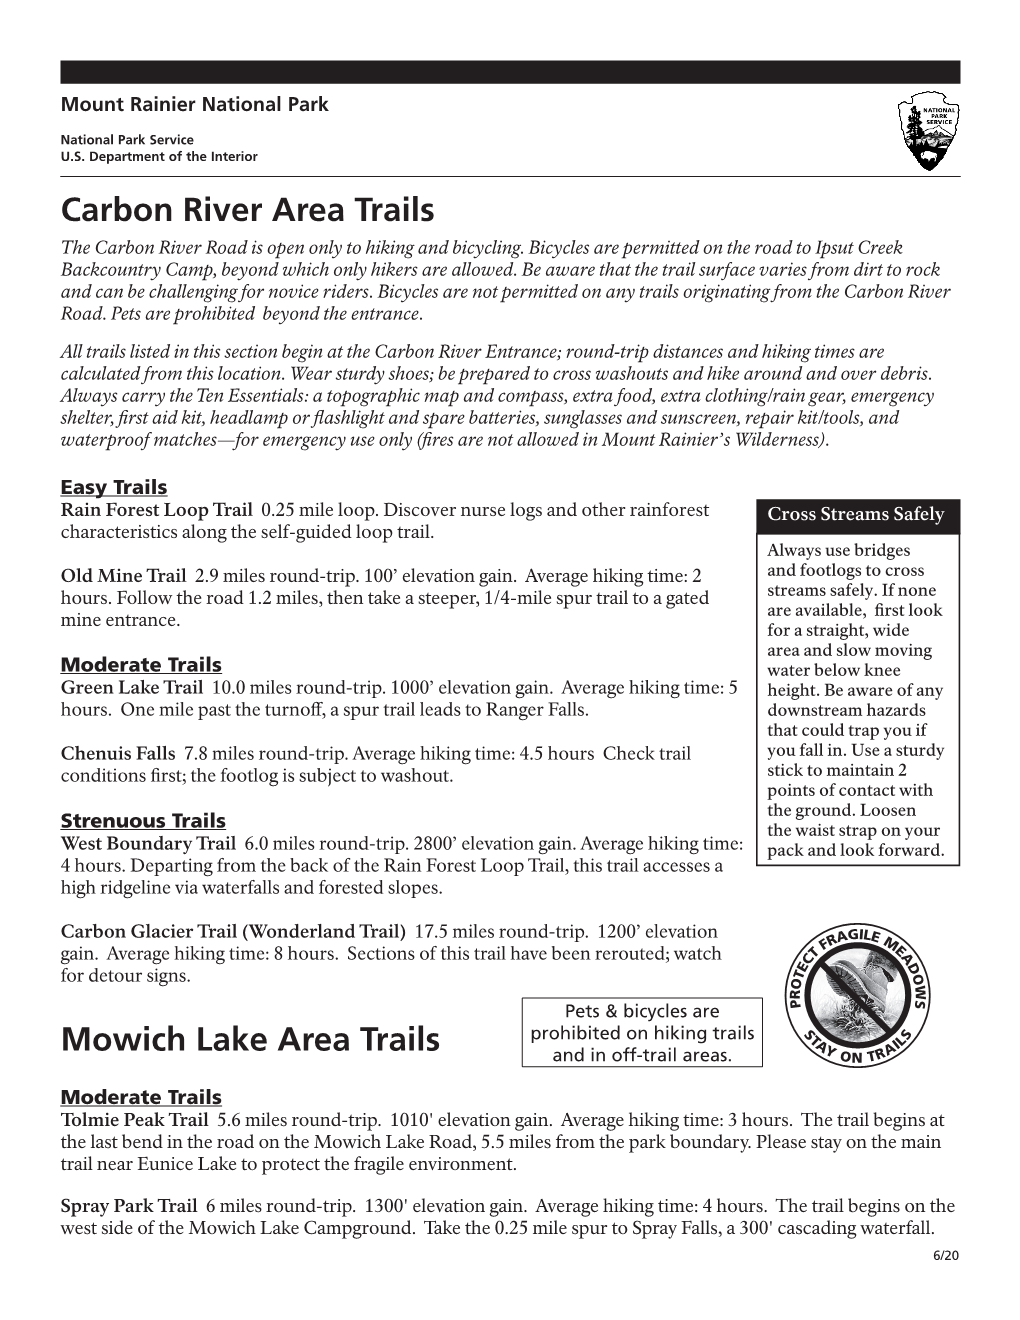 Carbon River & Mowich Area Trails